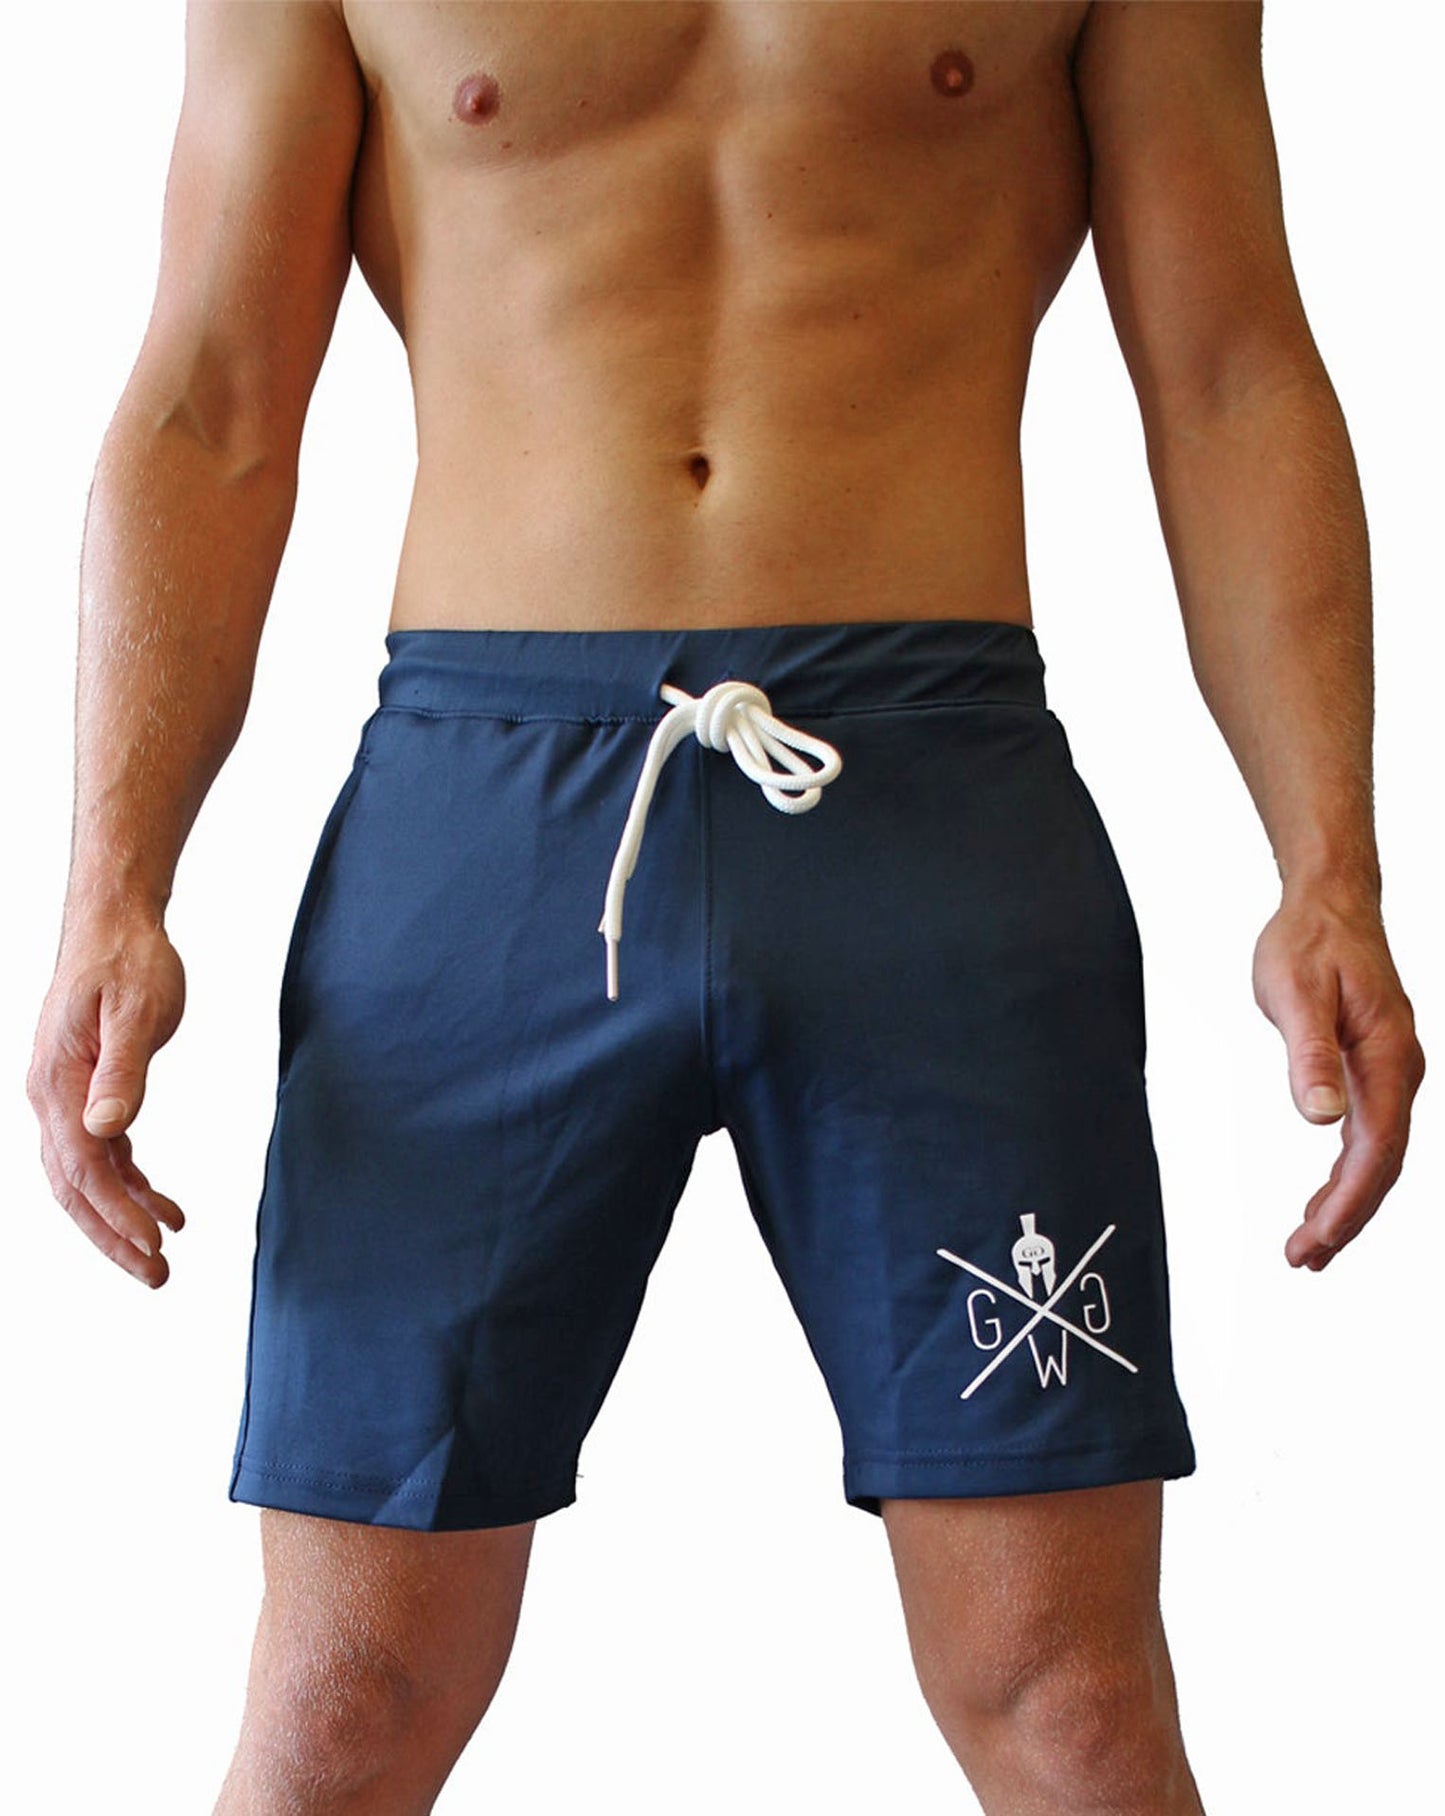 Sportliche und elegante Herren Fitness Shorts in Night Blue, perfekt für das Gym und Outdoor-Aktivitäten, von Gym Generation.